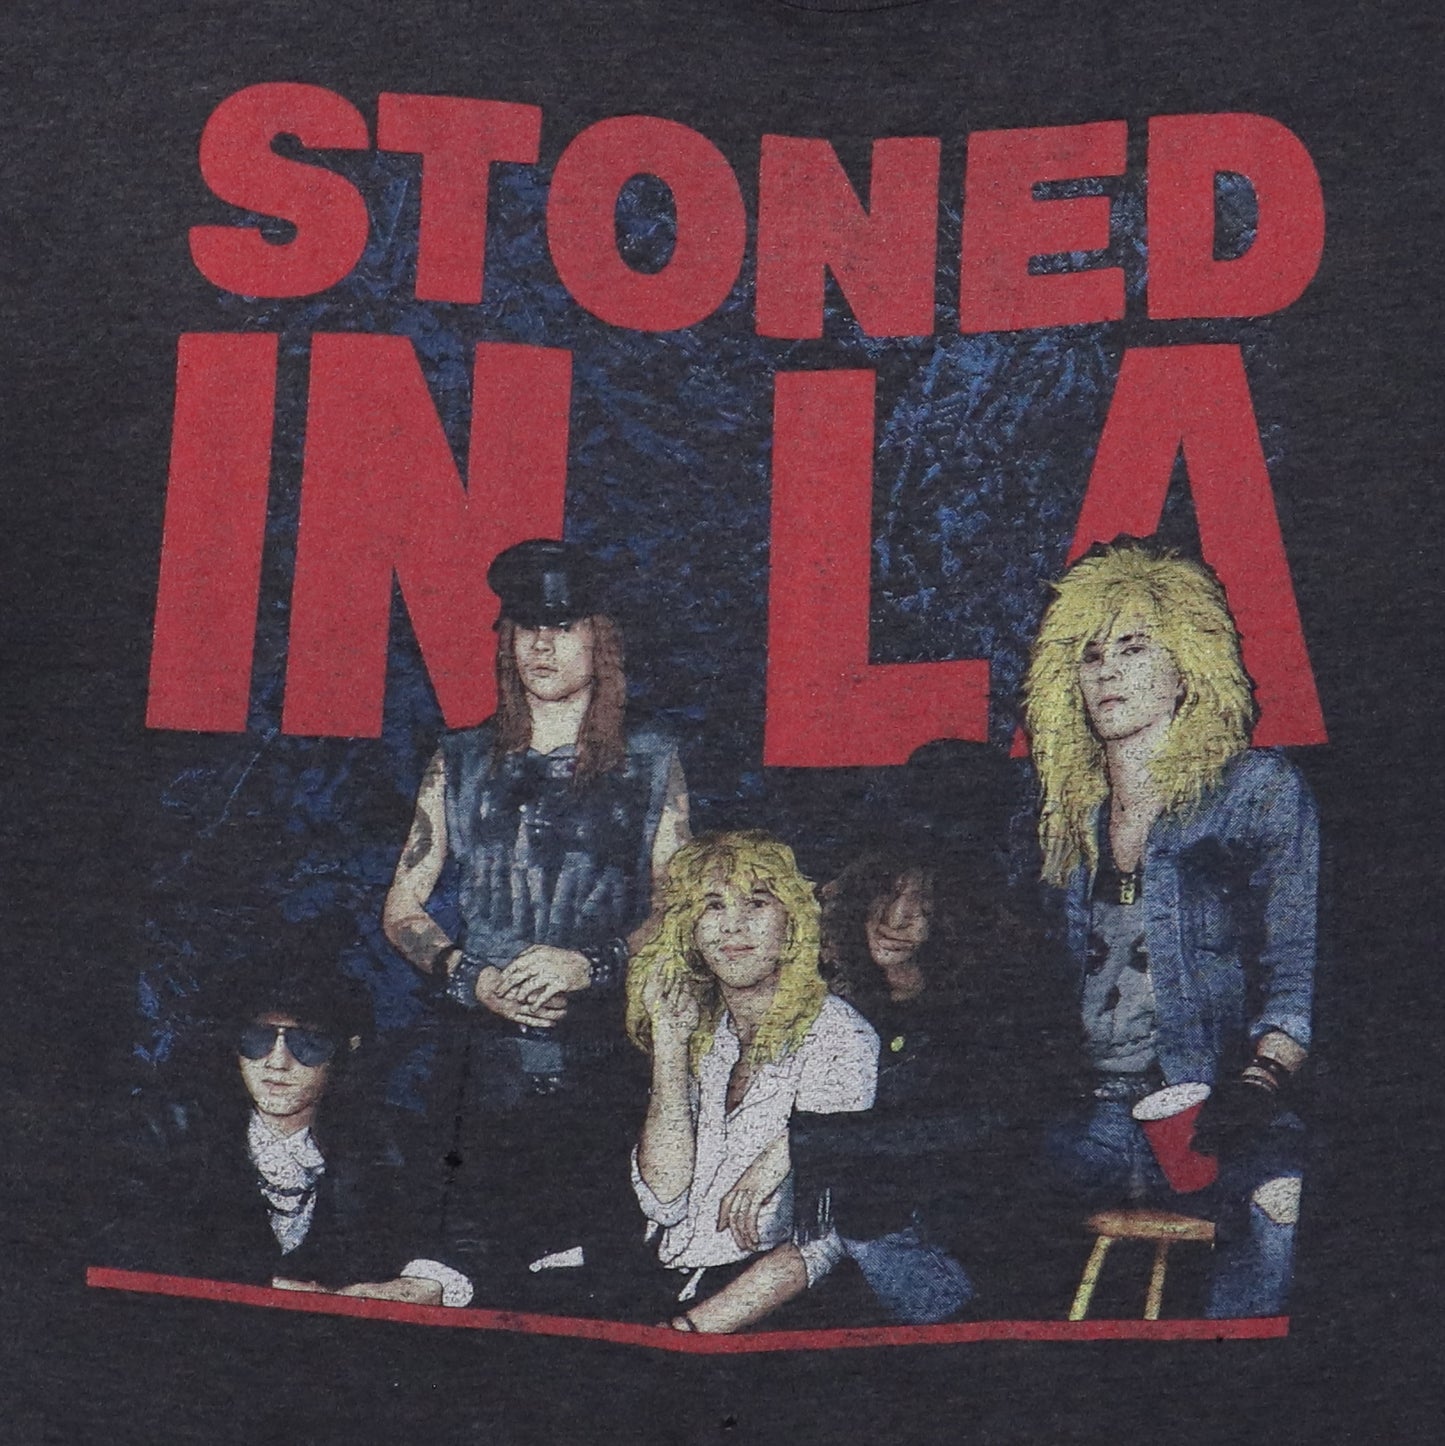 1989 Guns N Roses Stoned In LA Concert Shirt